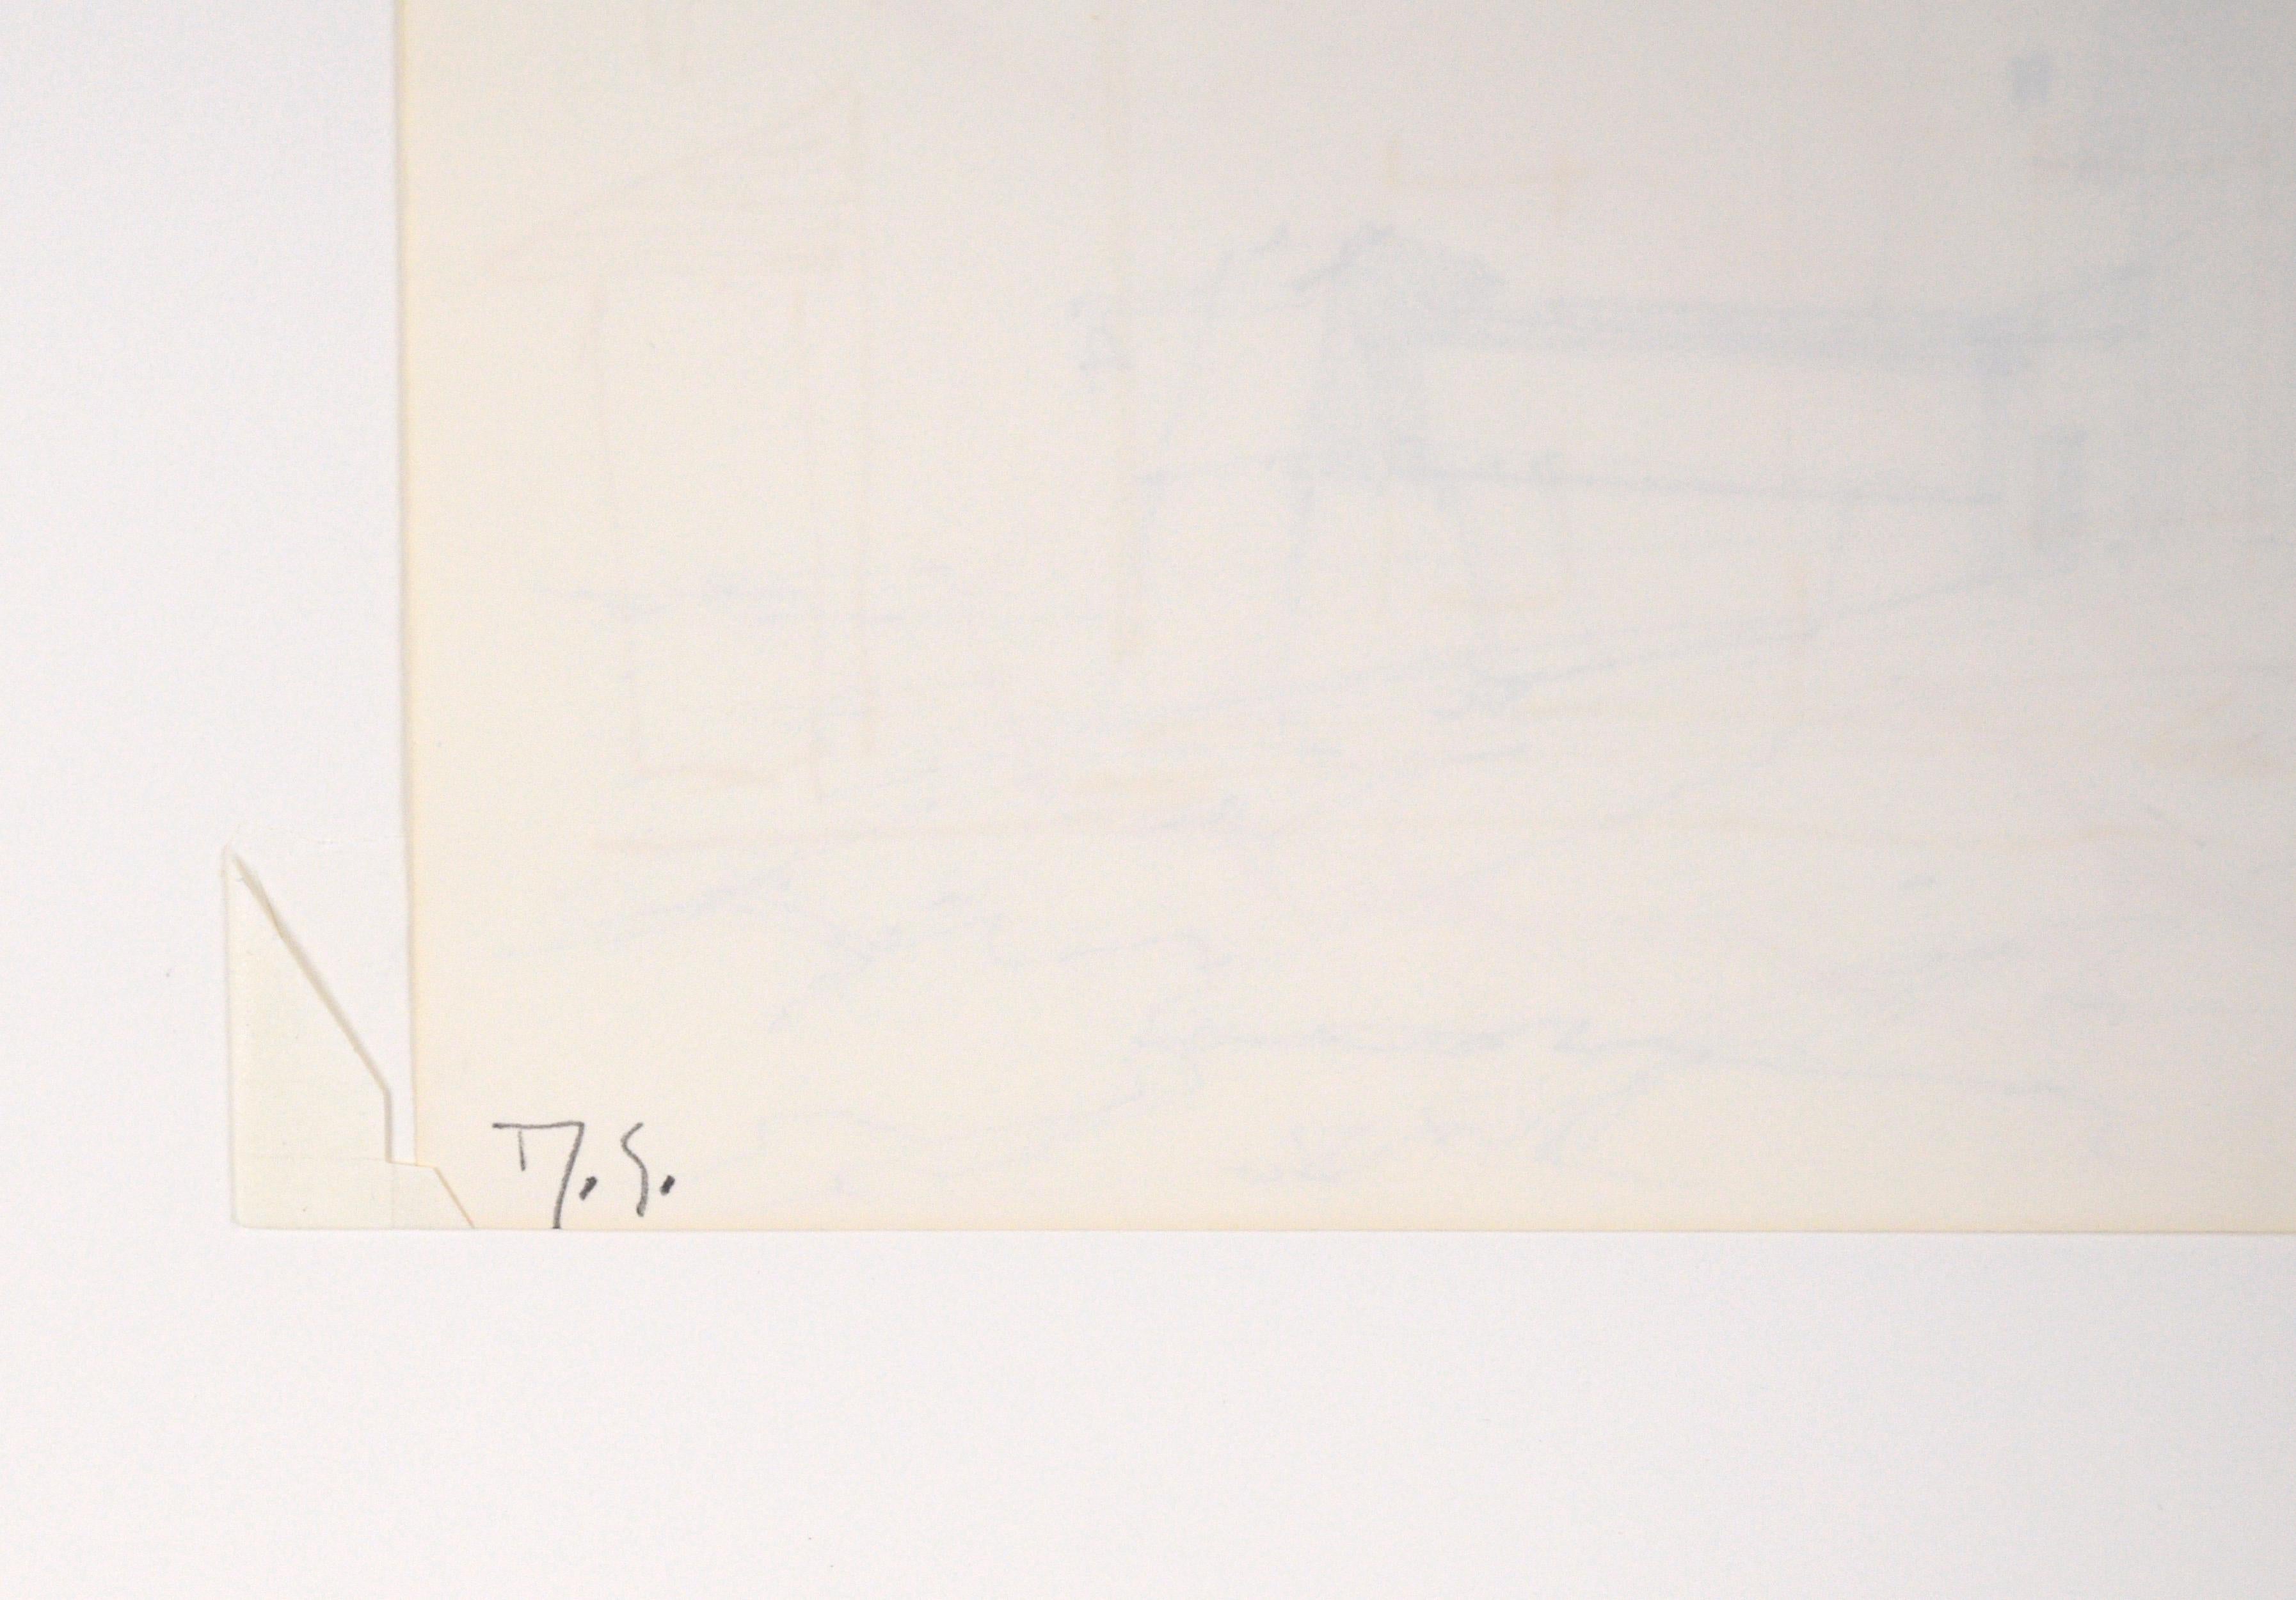 Phare sur la côte du Maine - Dessin impressionniste original à la plume et à l'encre Paysage

Délicat paysage dessiné au trait à la plume et à l'encre par l'artiste classé du Maine Laurence Sisson (américain, 1928-2015). Un phare et une autre